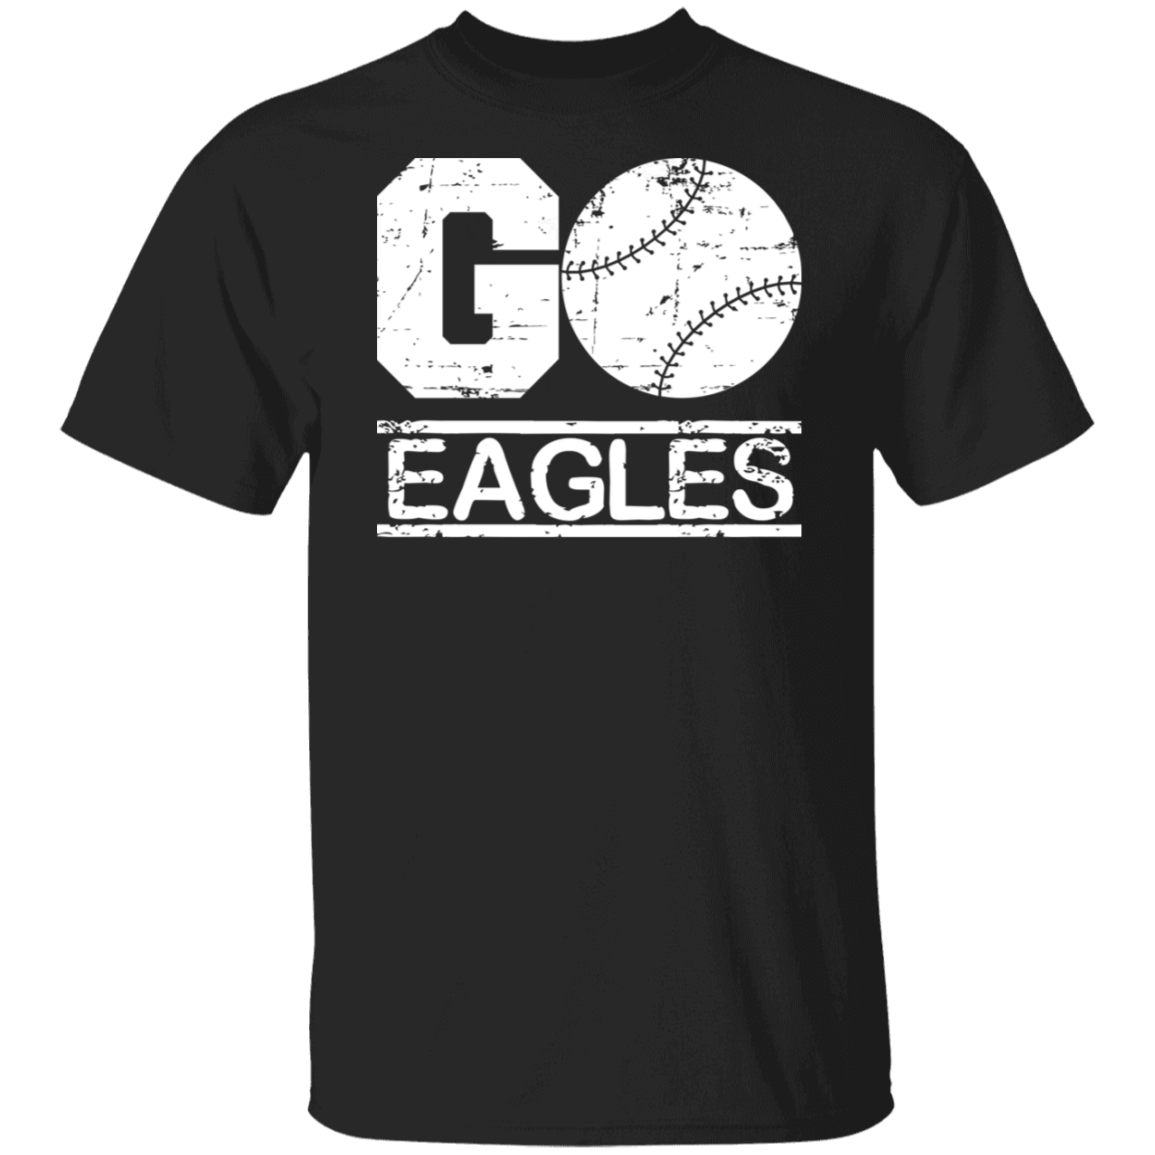 Go Eagles Baseball White Print T-Shirt